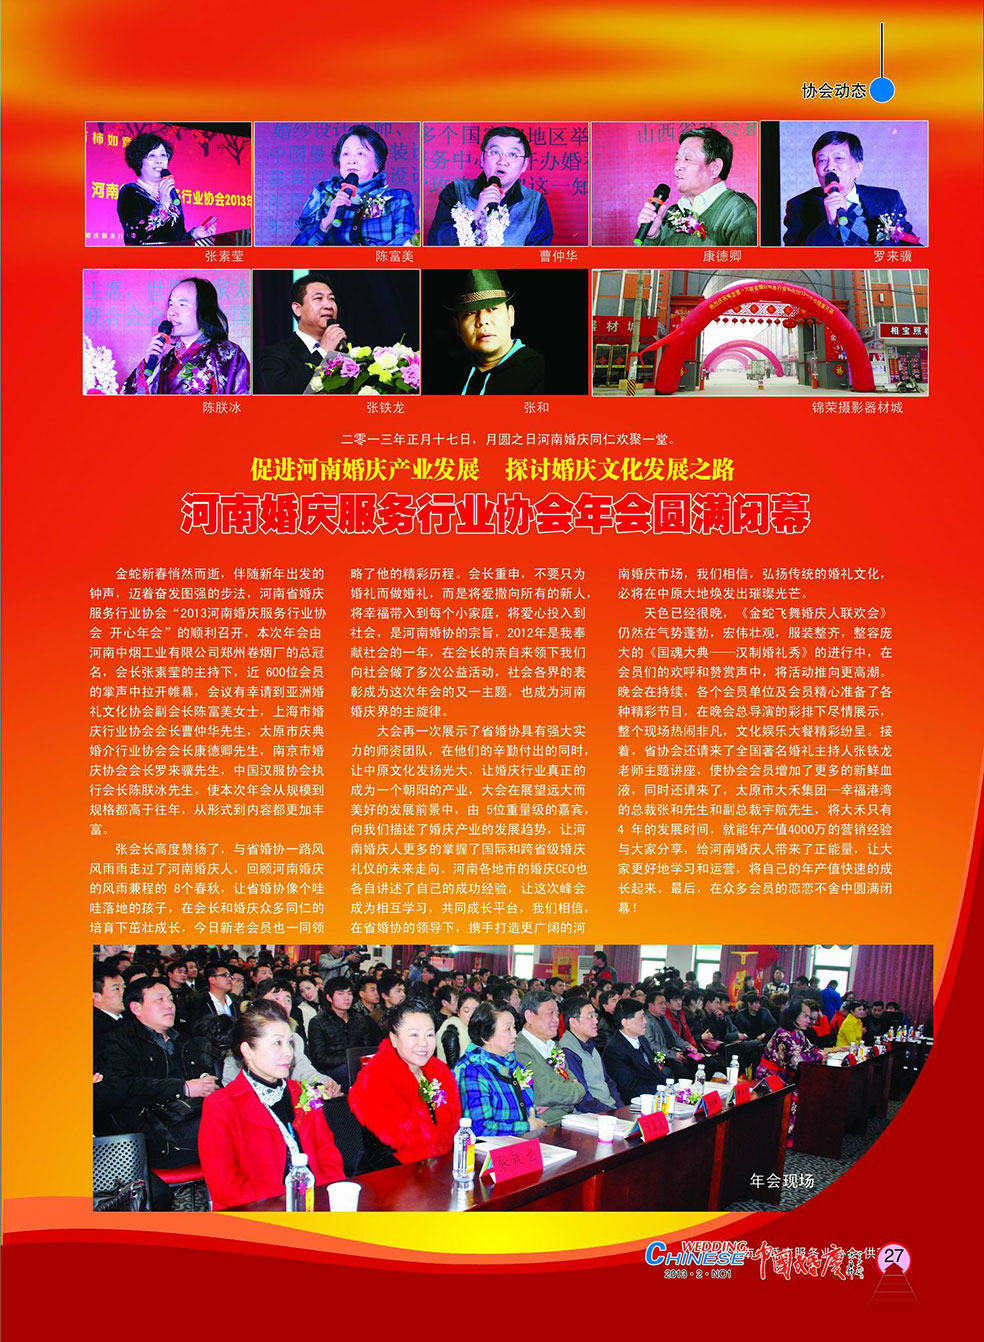 《中国婚庆》杂志2013年第一期（行业稀缺藏本）